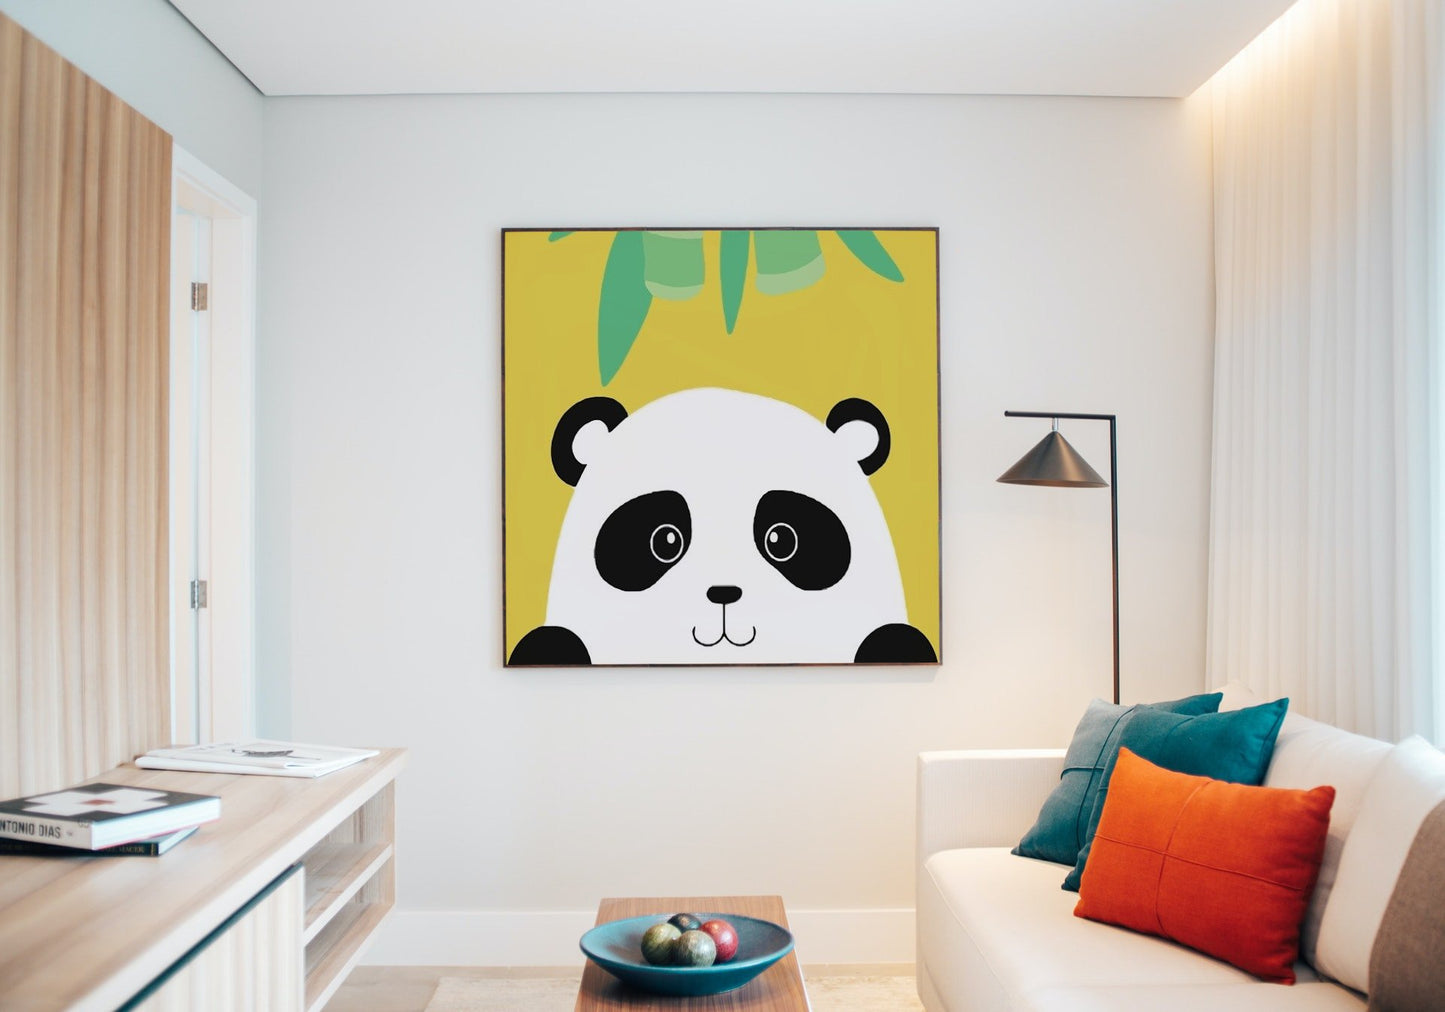 Csinos panda - gyerek számfestő készlet